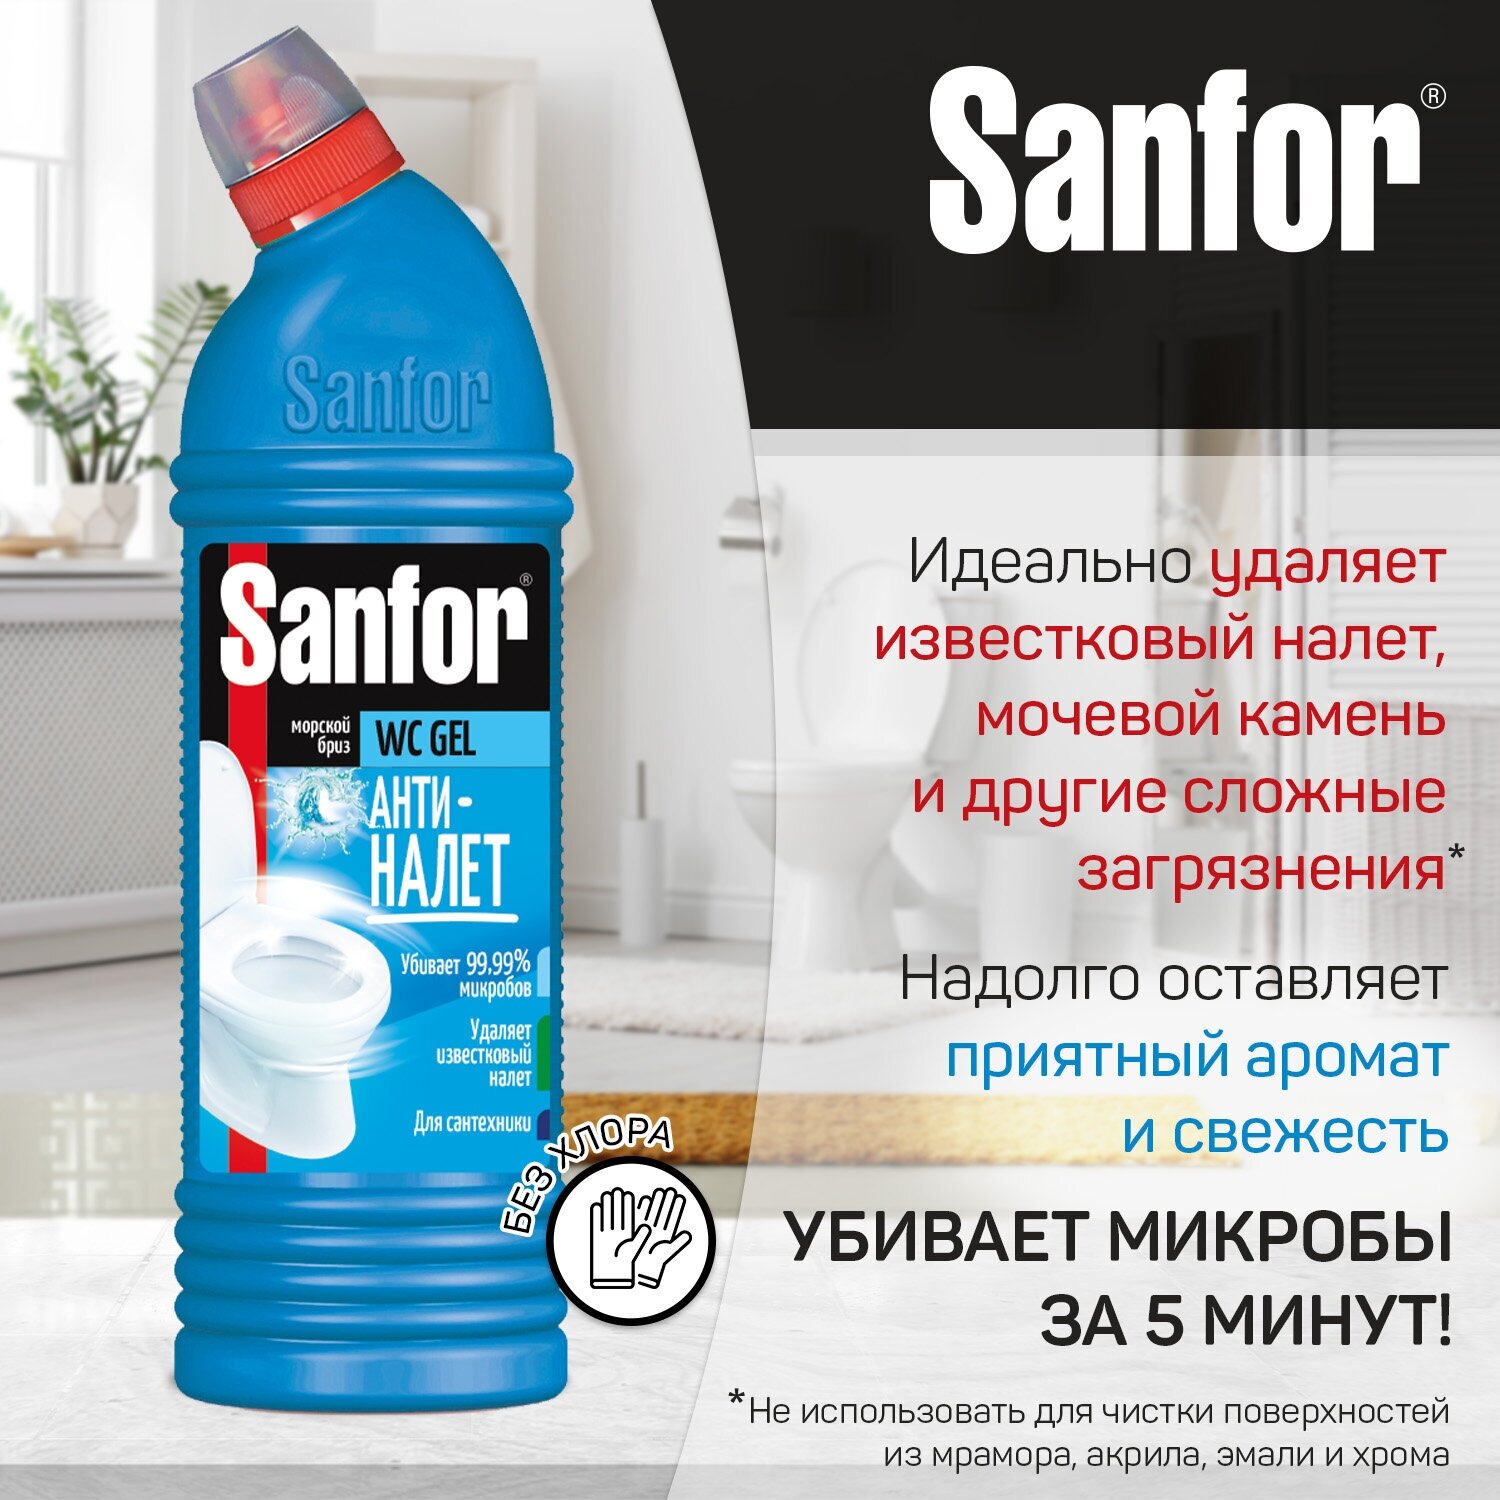 Sanfor Гель чистящий для унитаза Антиналет 1л